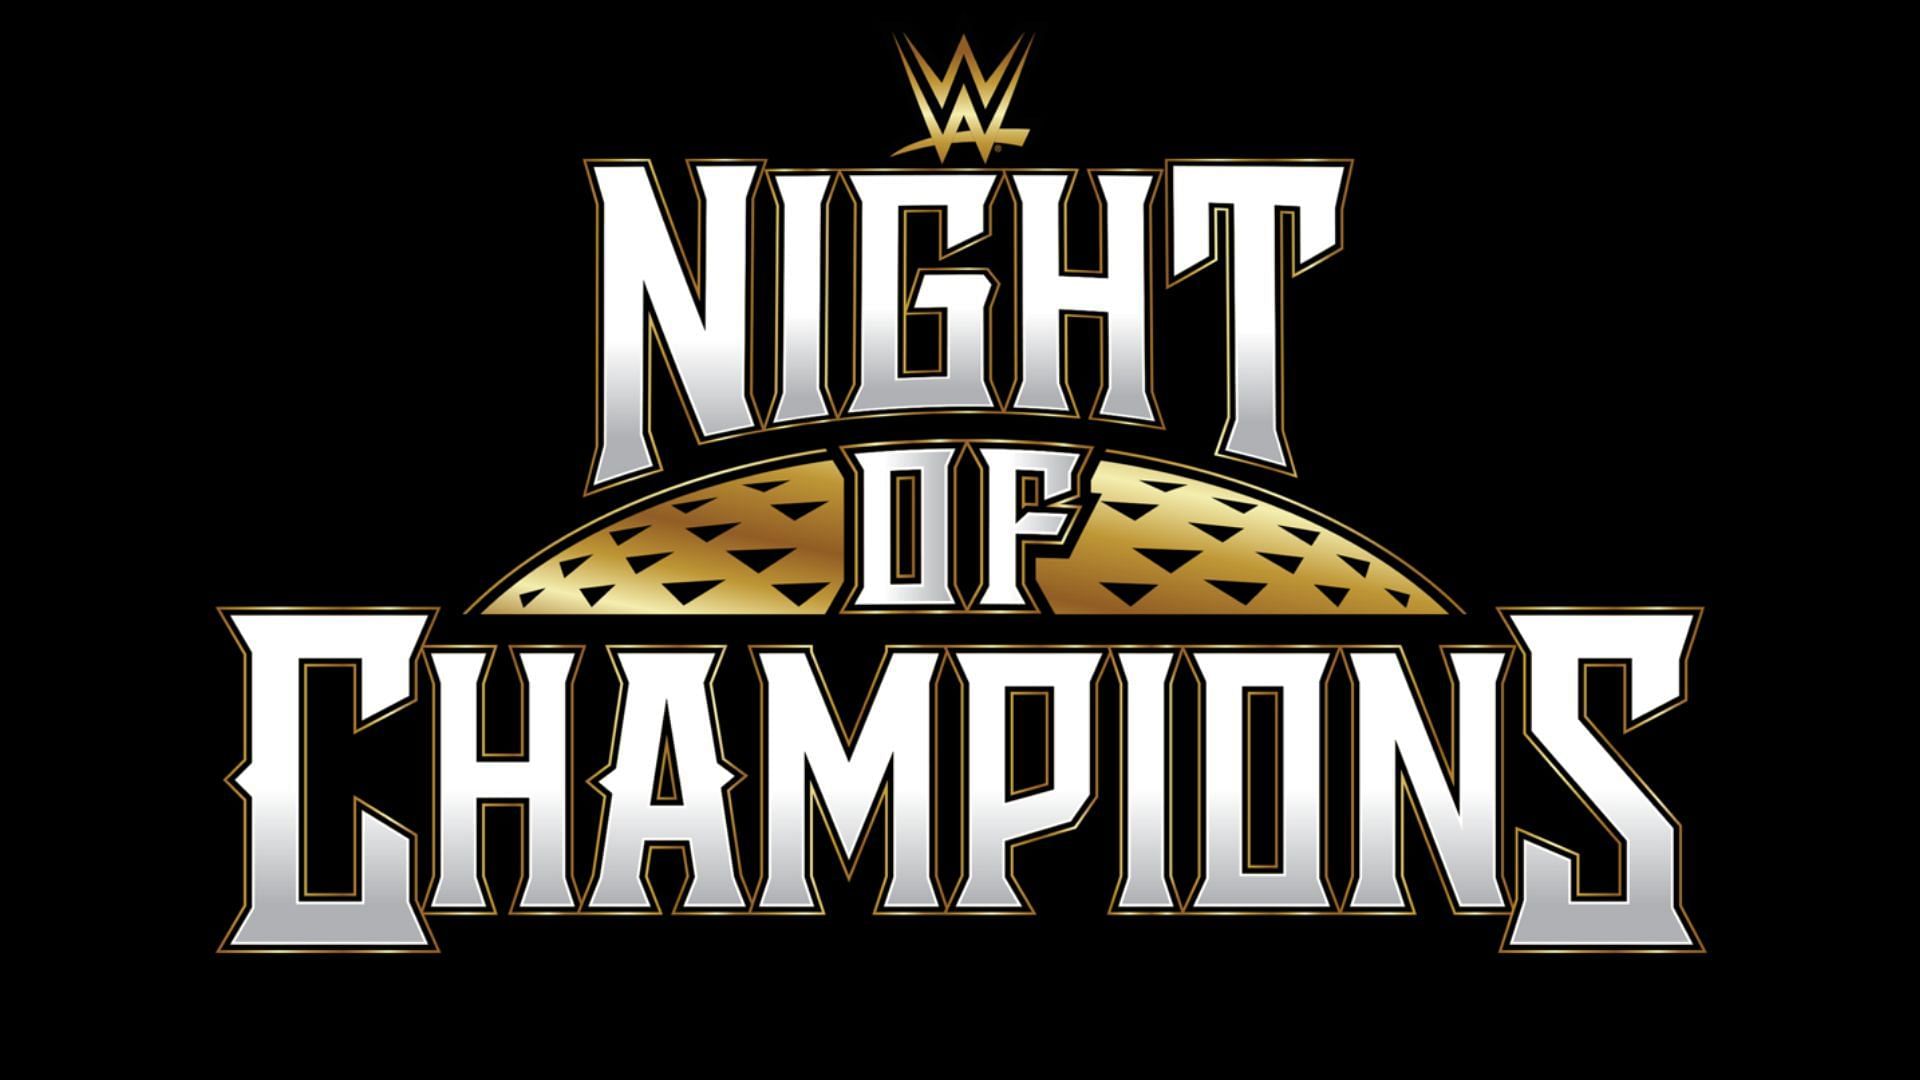 WWE Night of Champions 2023 took place in Saudi Arabia!